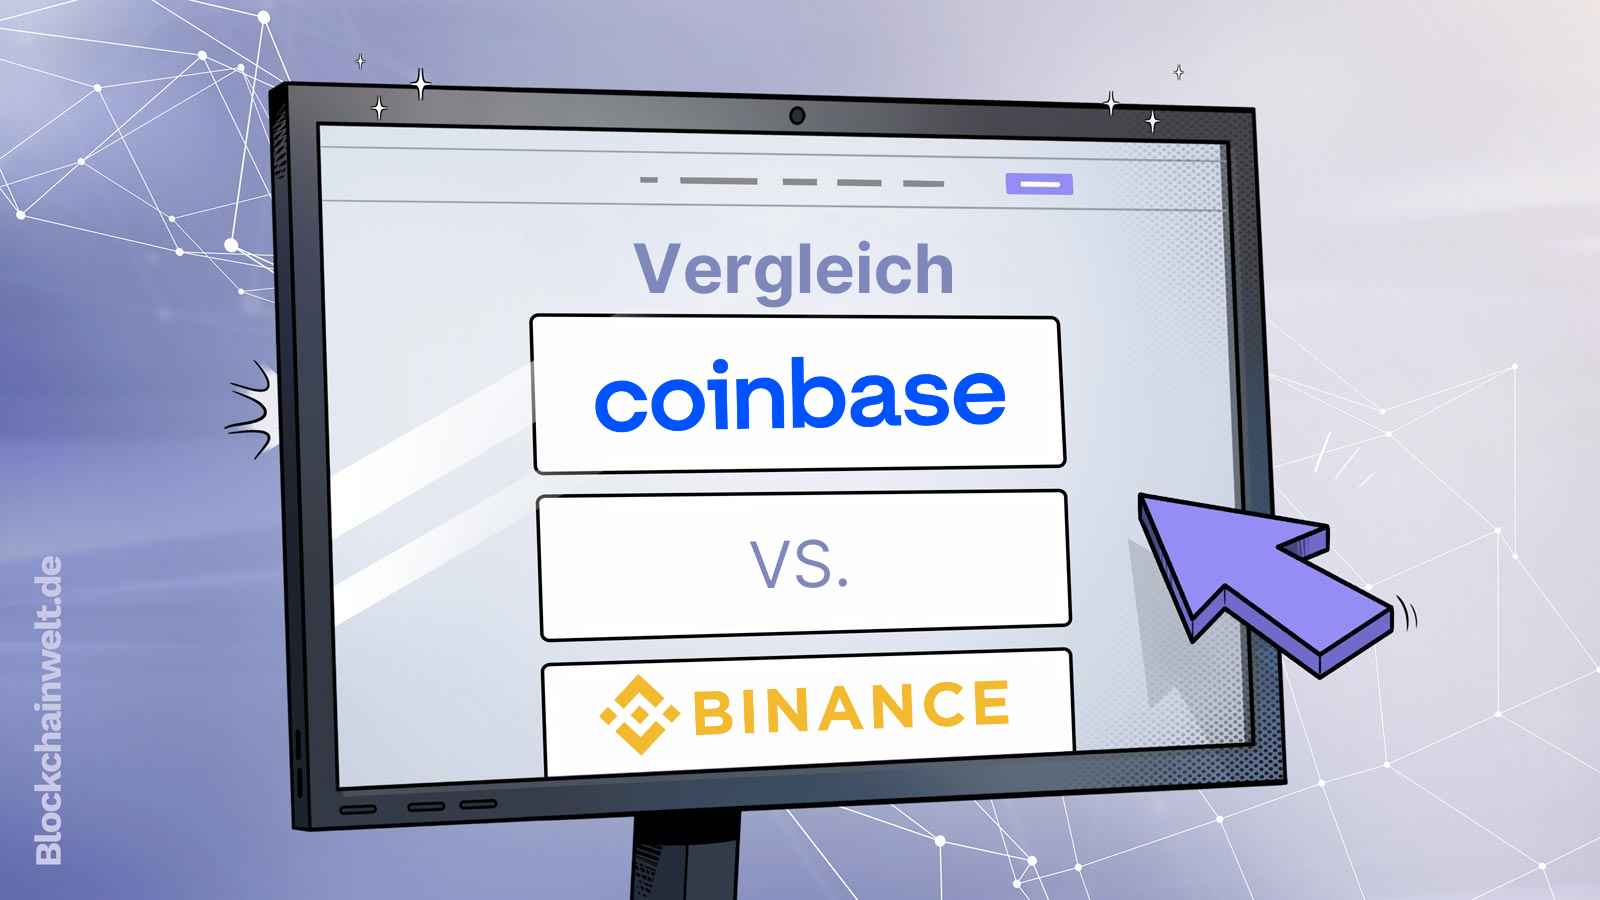 Coinbase vs. Binance Vergleich